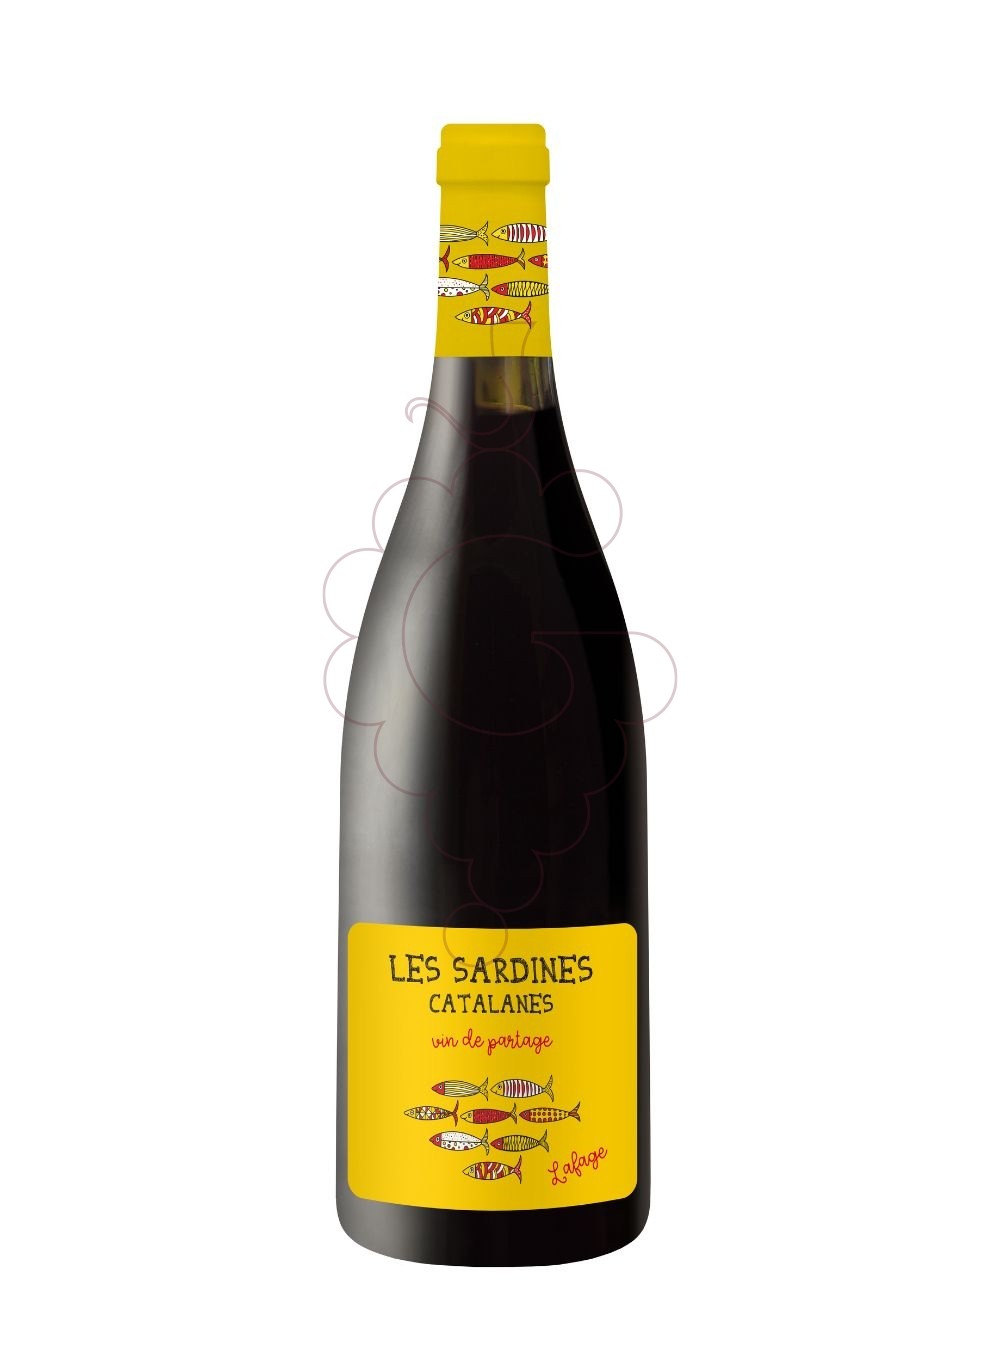 Photo Les sardines catalanes negre vin rouge